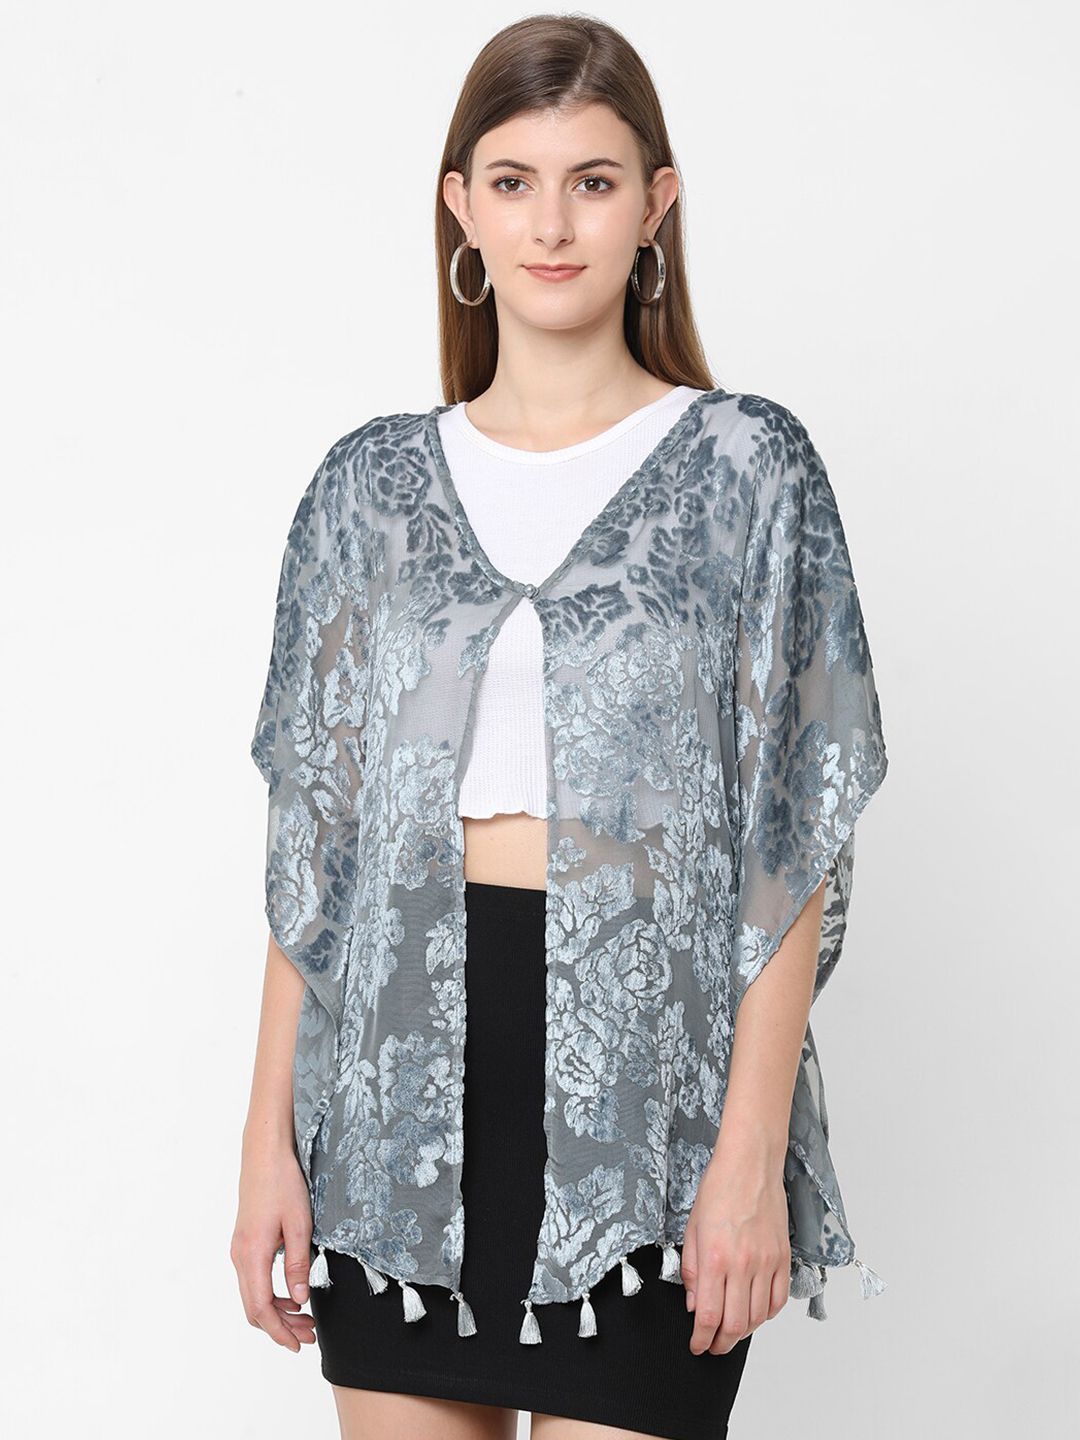 Cloth Haus India Women Grey Floral Printed Kimono Shrug Price in India